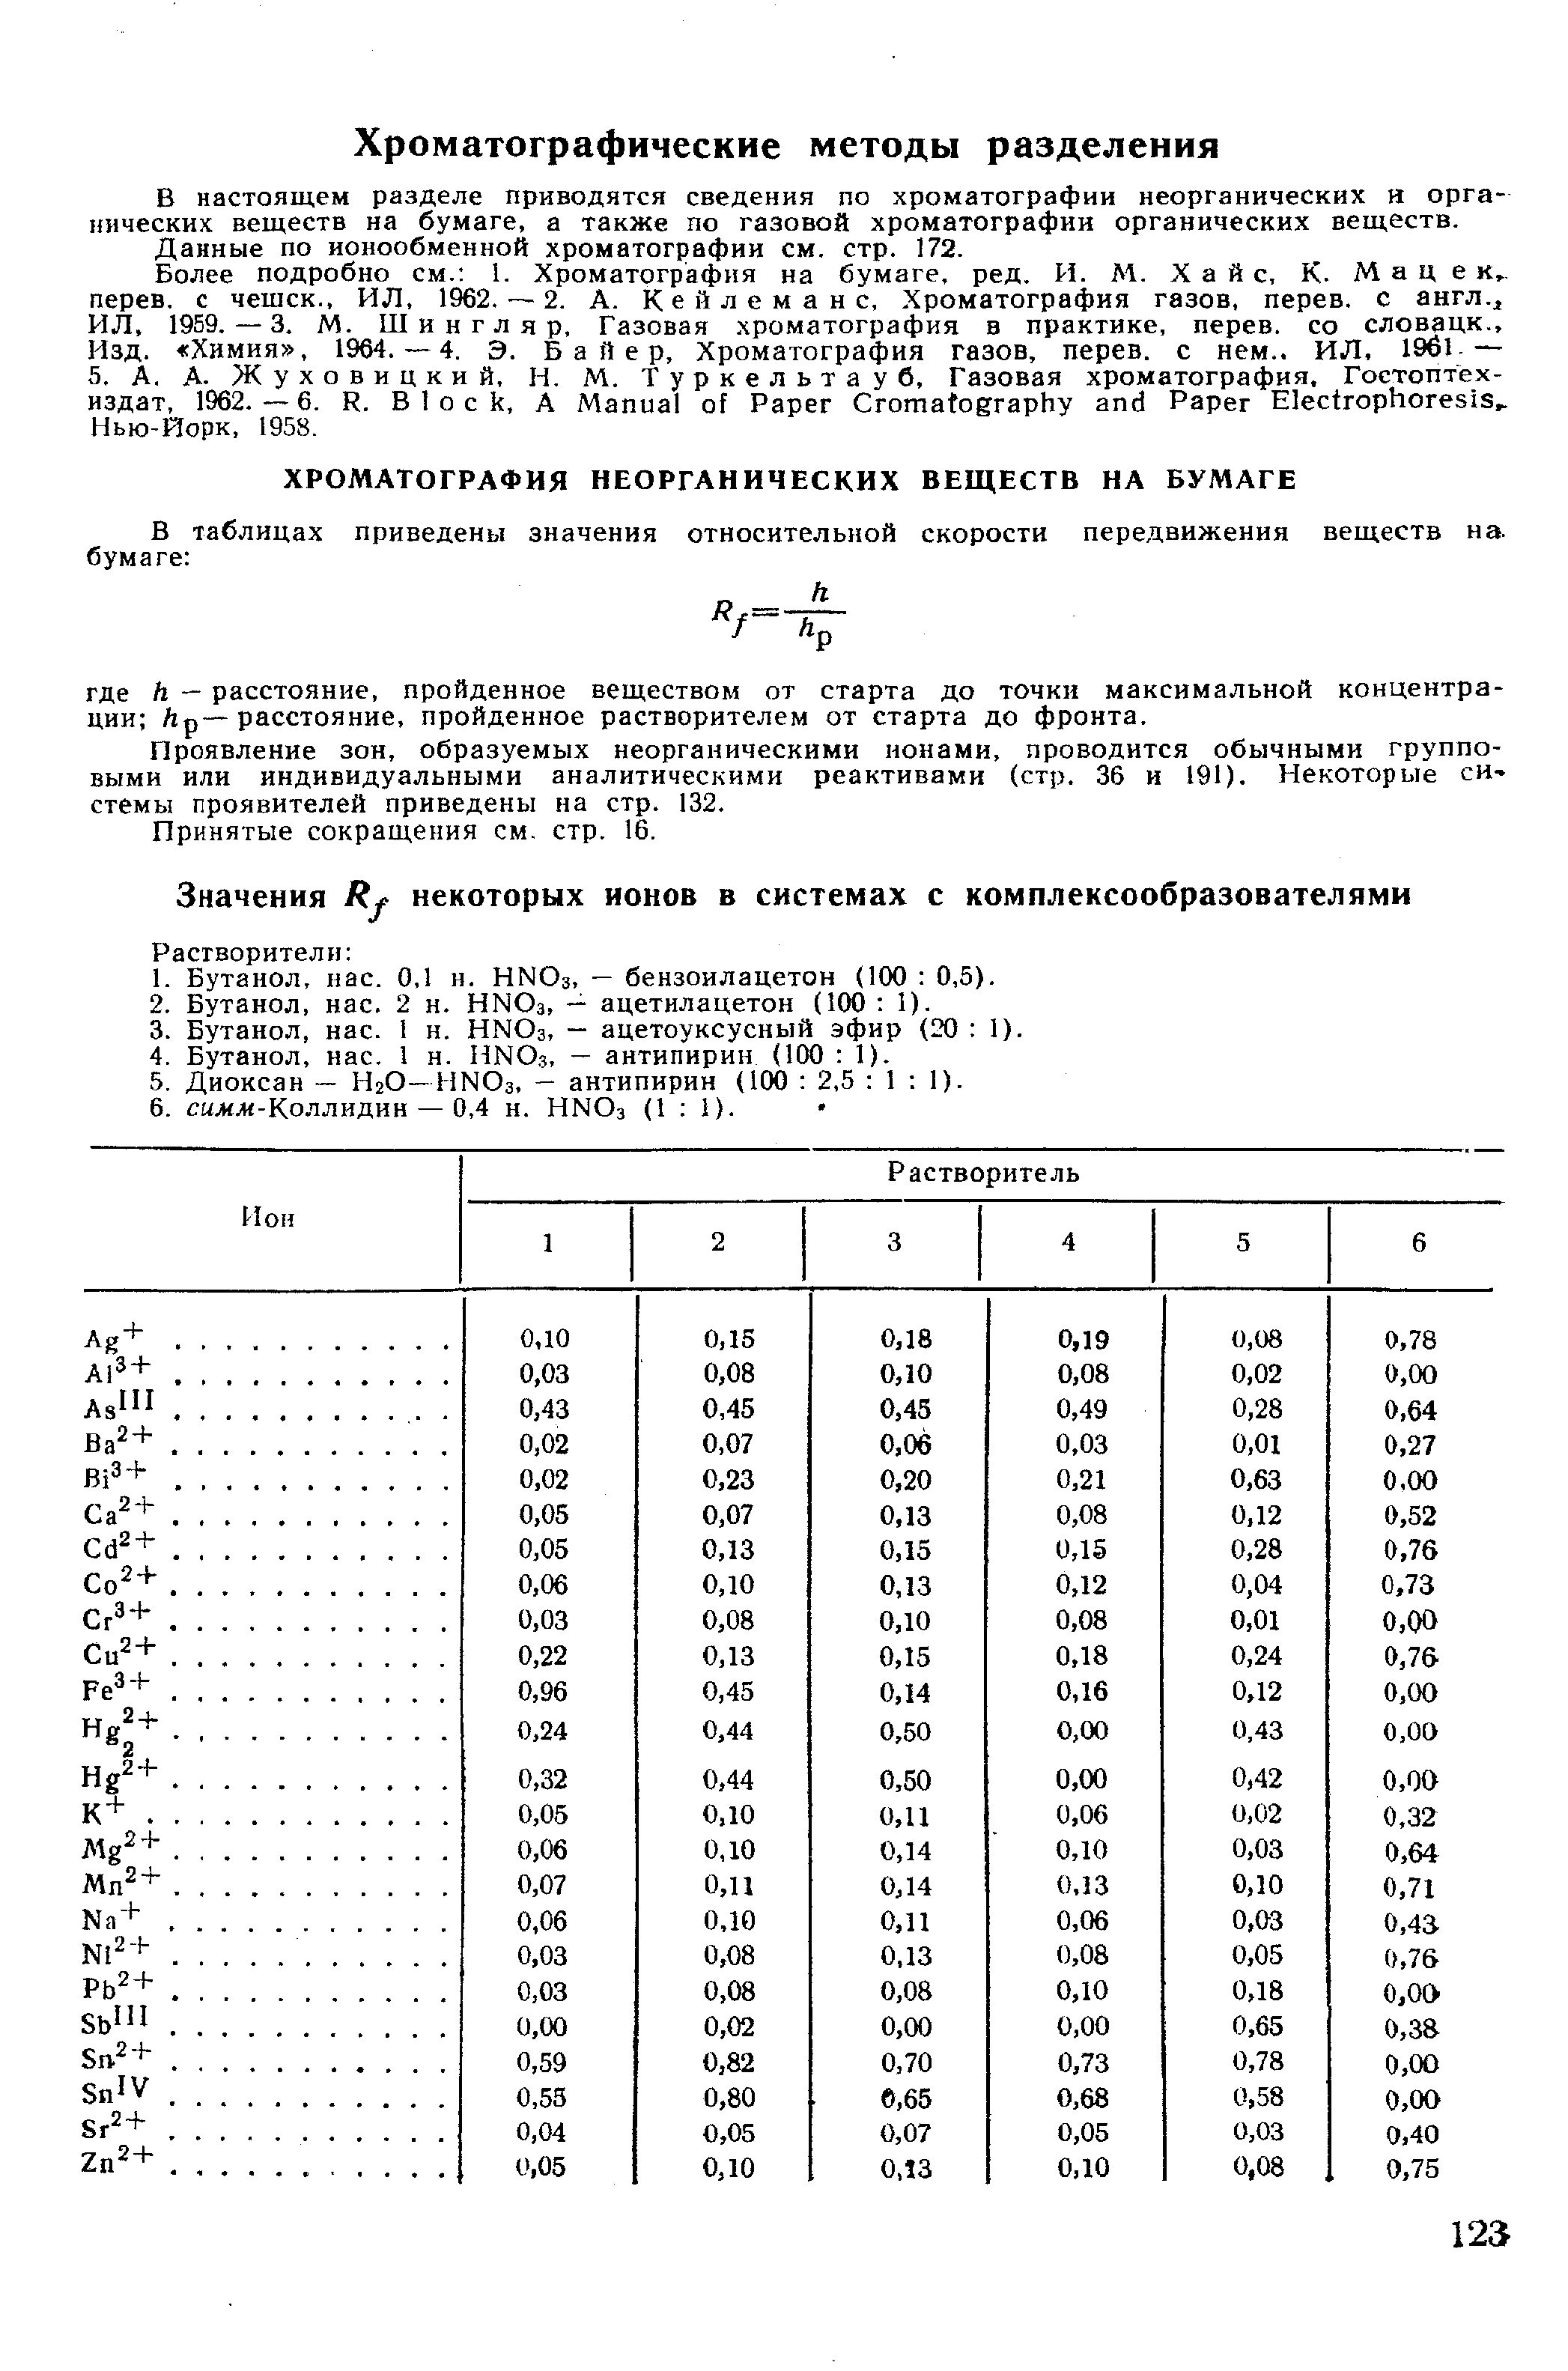 Данные по ионообменной хроматографии см. стр. 172.